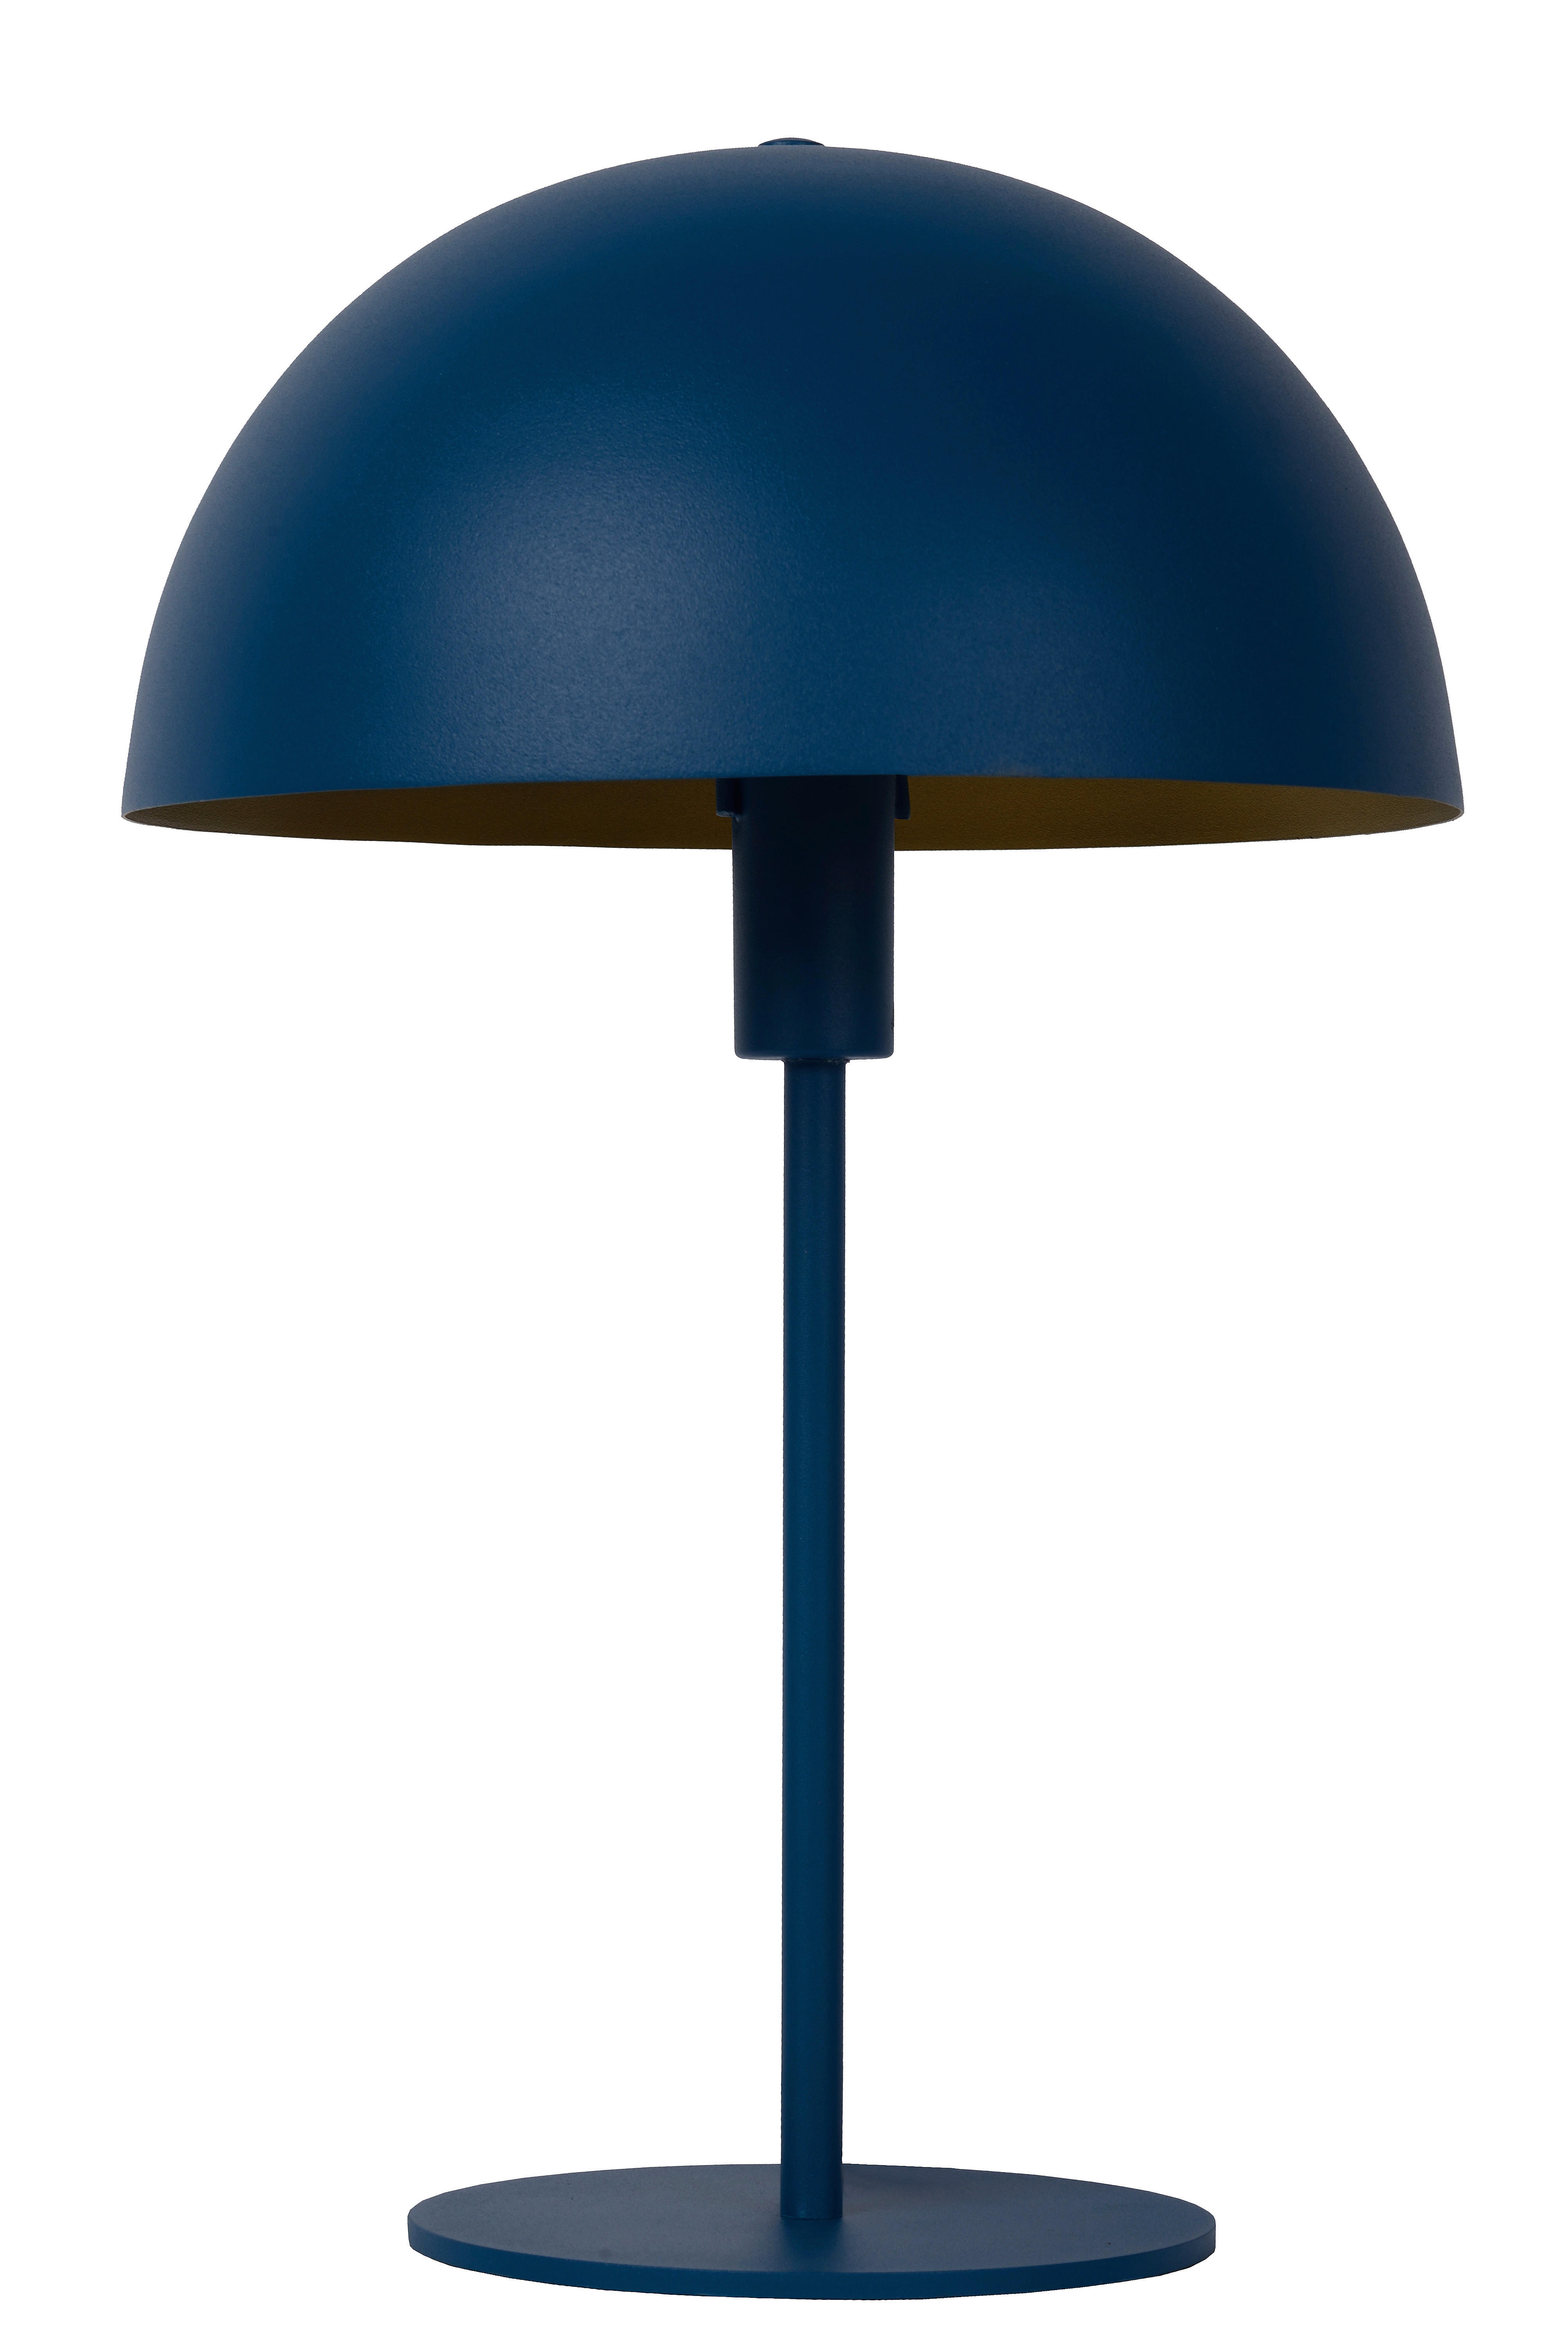 TISCHLEUCHTE SIEMON  - Blau/Messingfarben, Design, Metall (25/40cm)